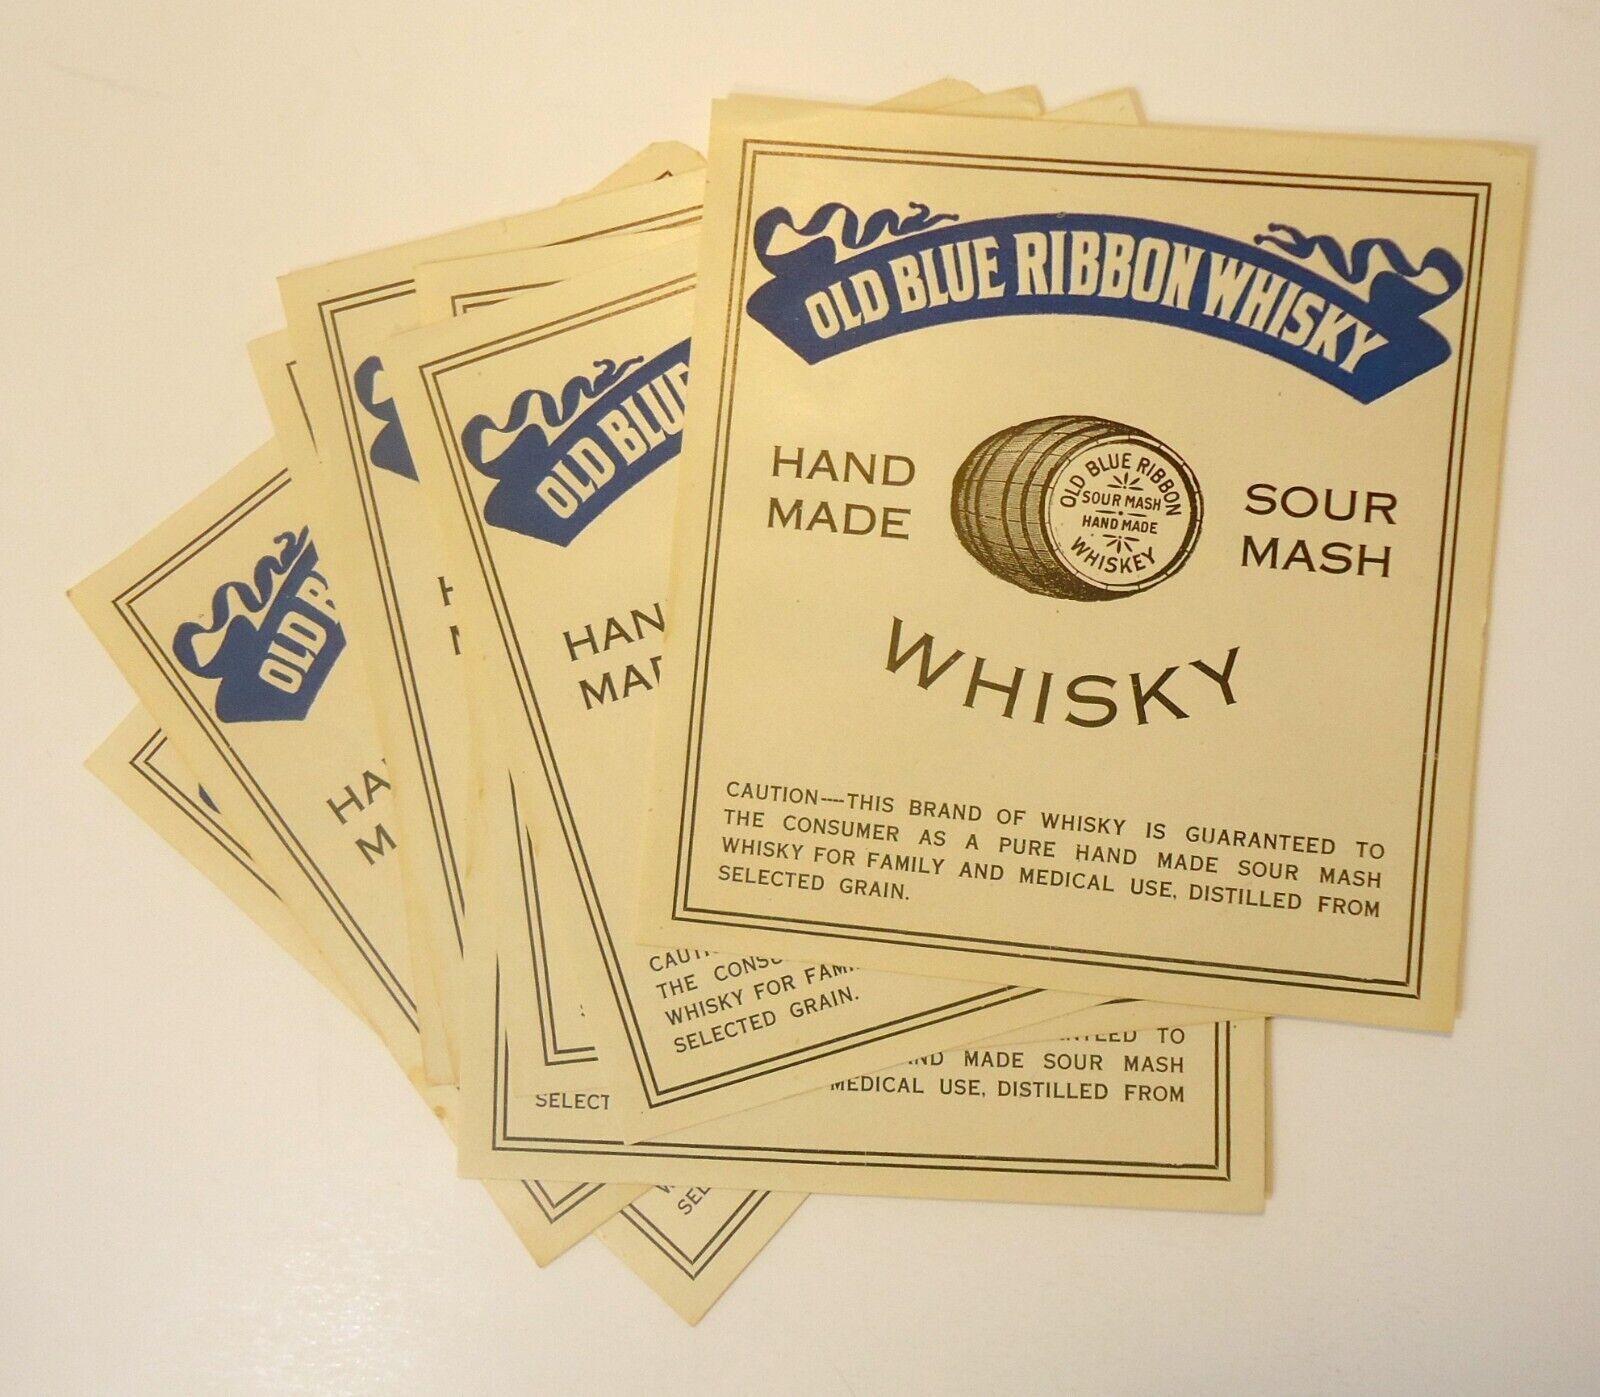 Lot of 8 Vintage ORIGINAL Old Blue Ribbon Whiskey Sour Mash Labels